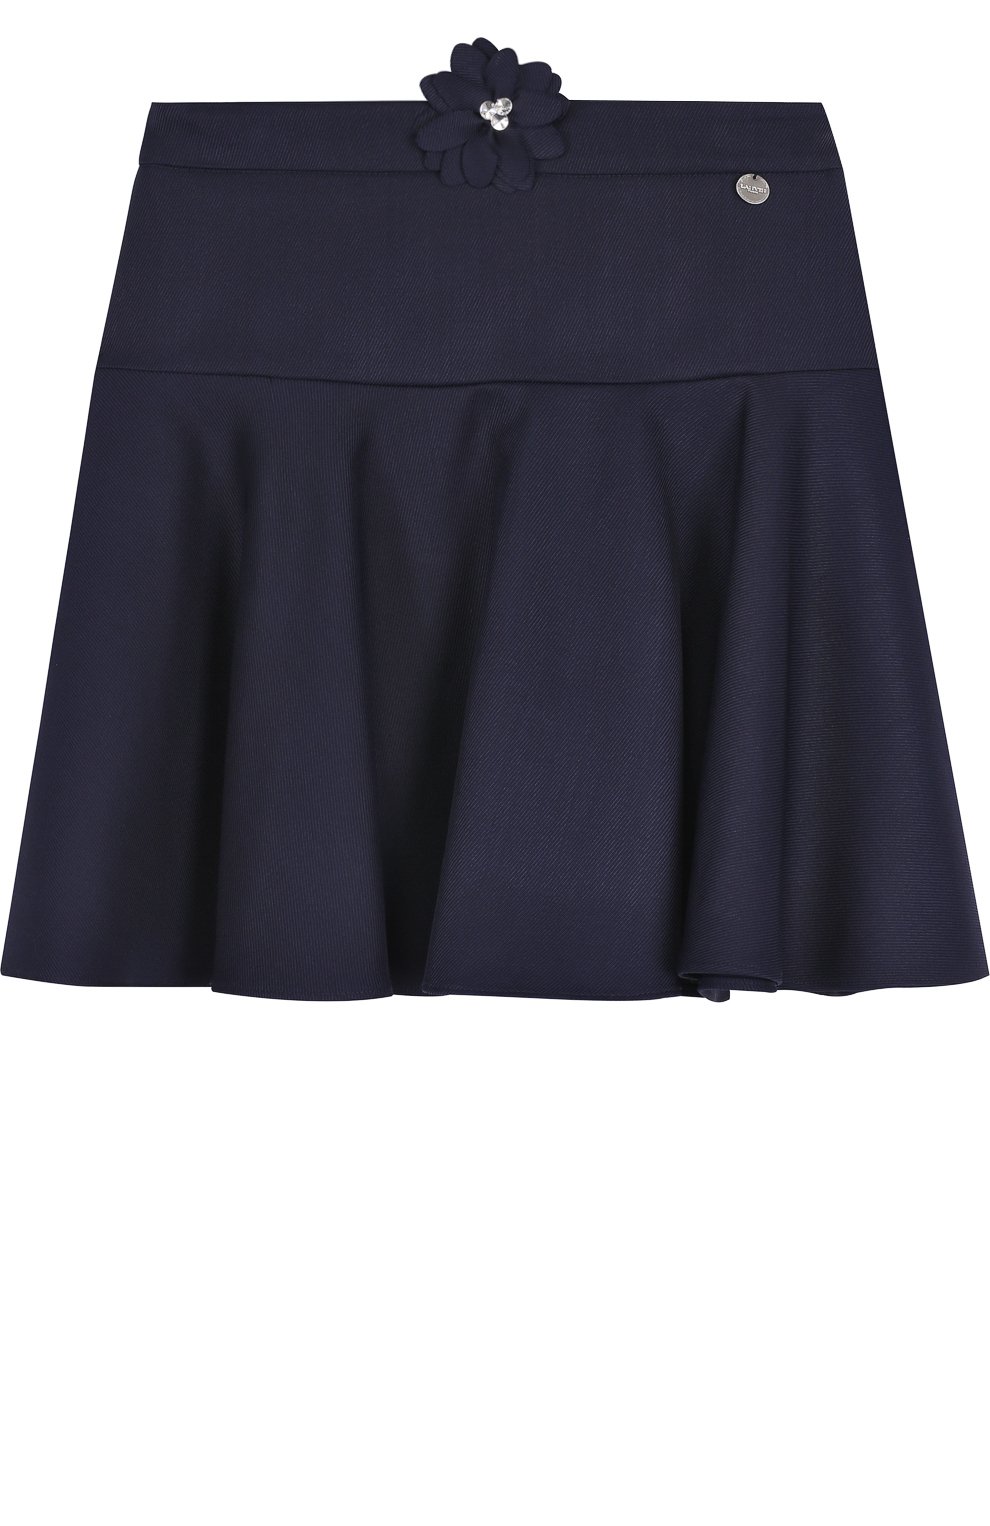 Шерстяная юбка с аппликацией Lanvin